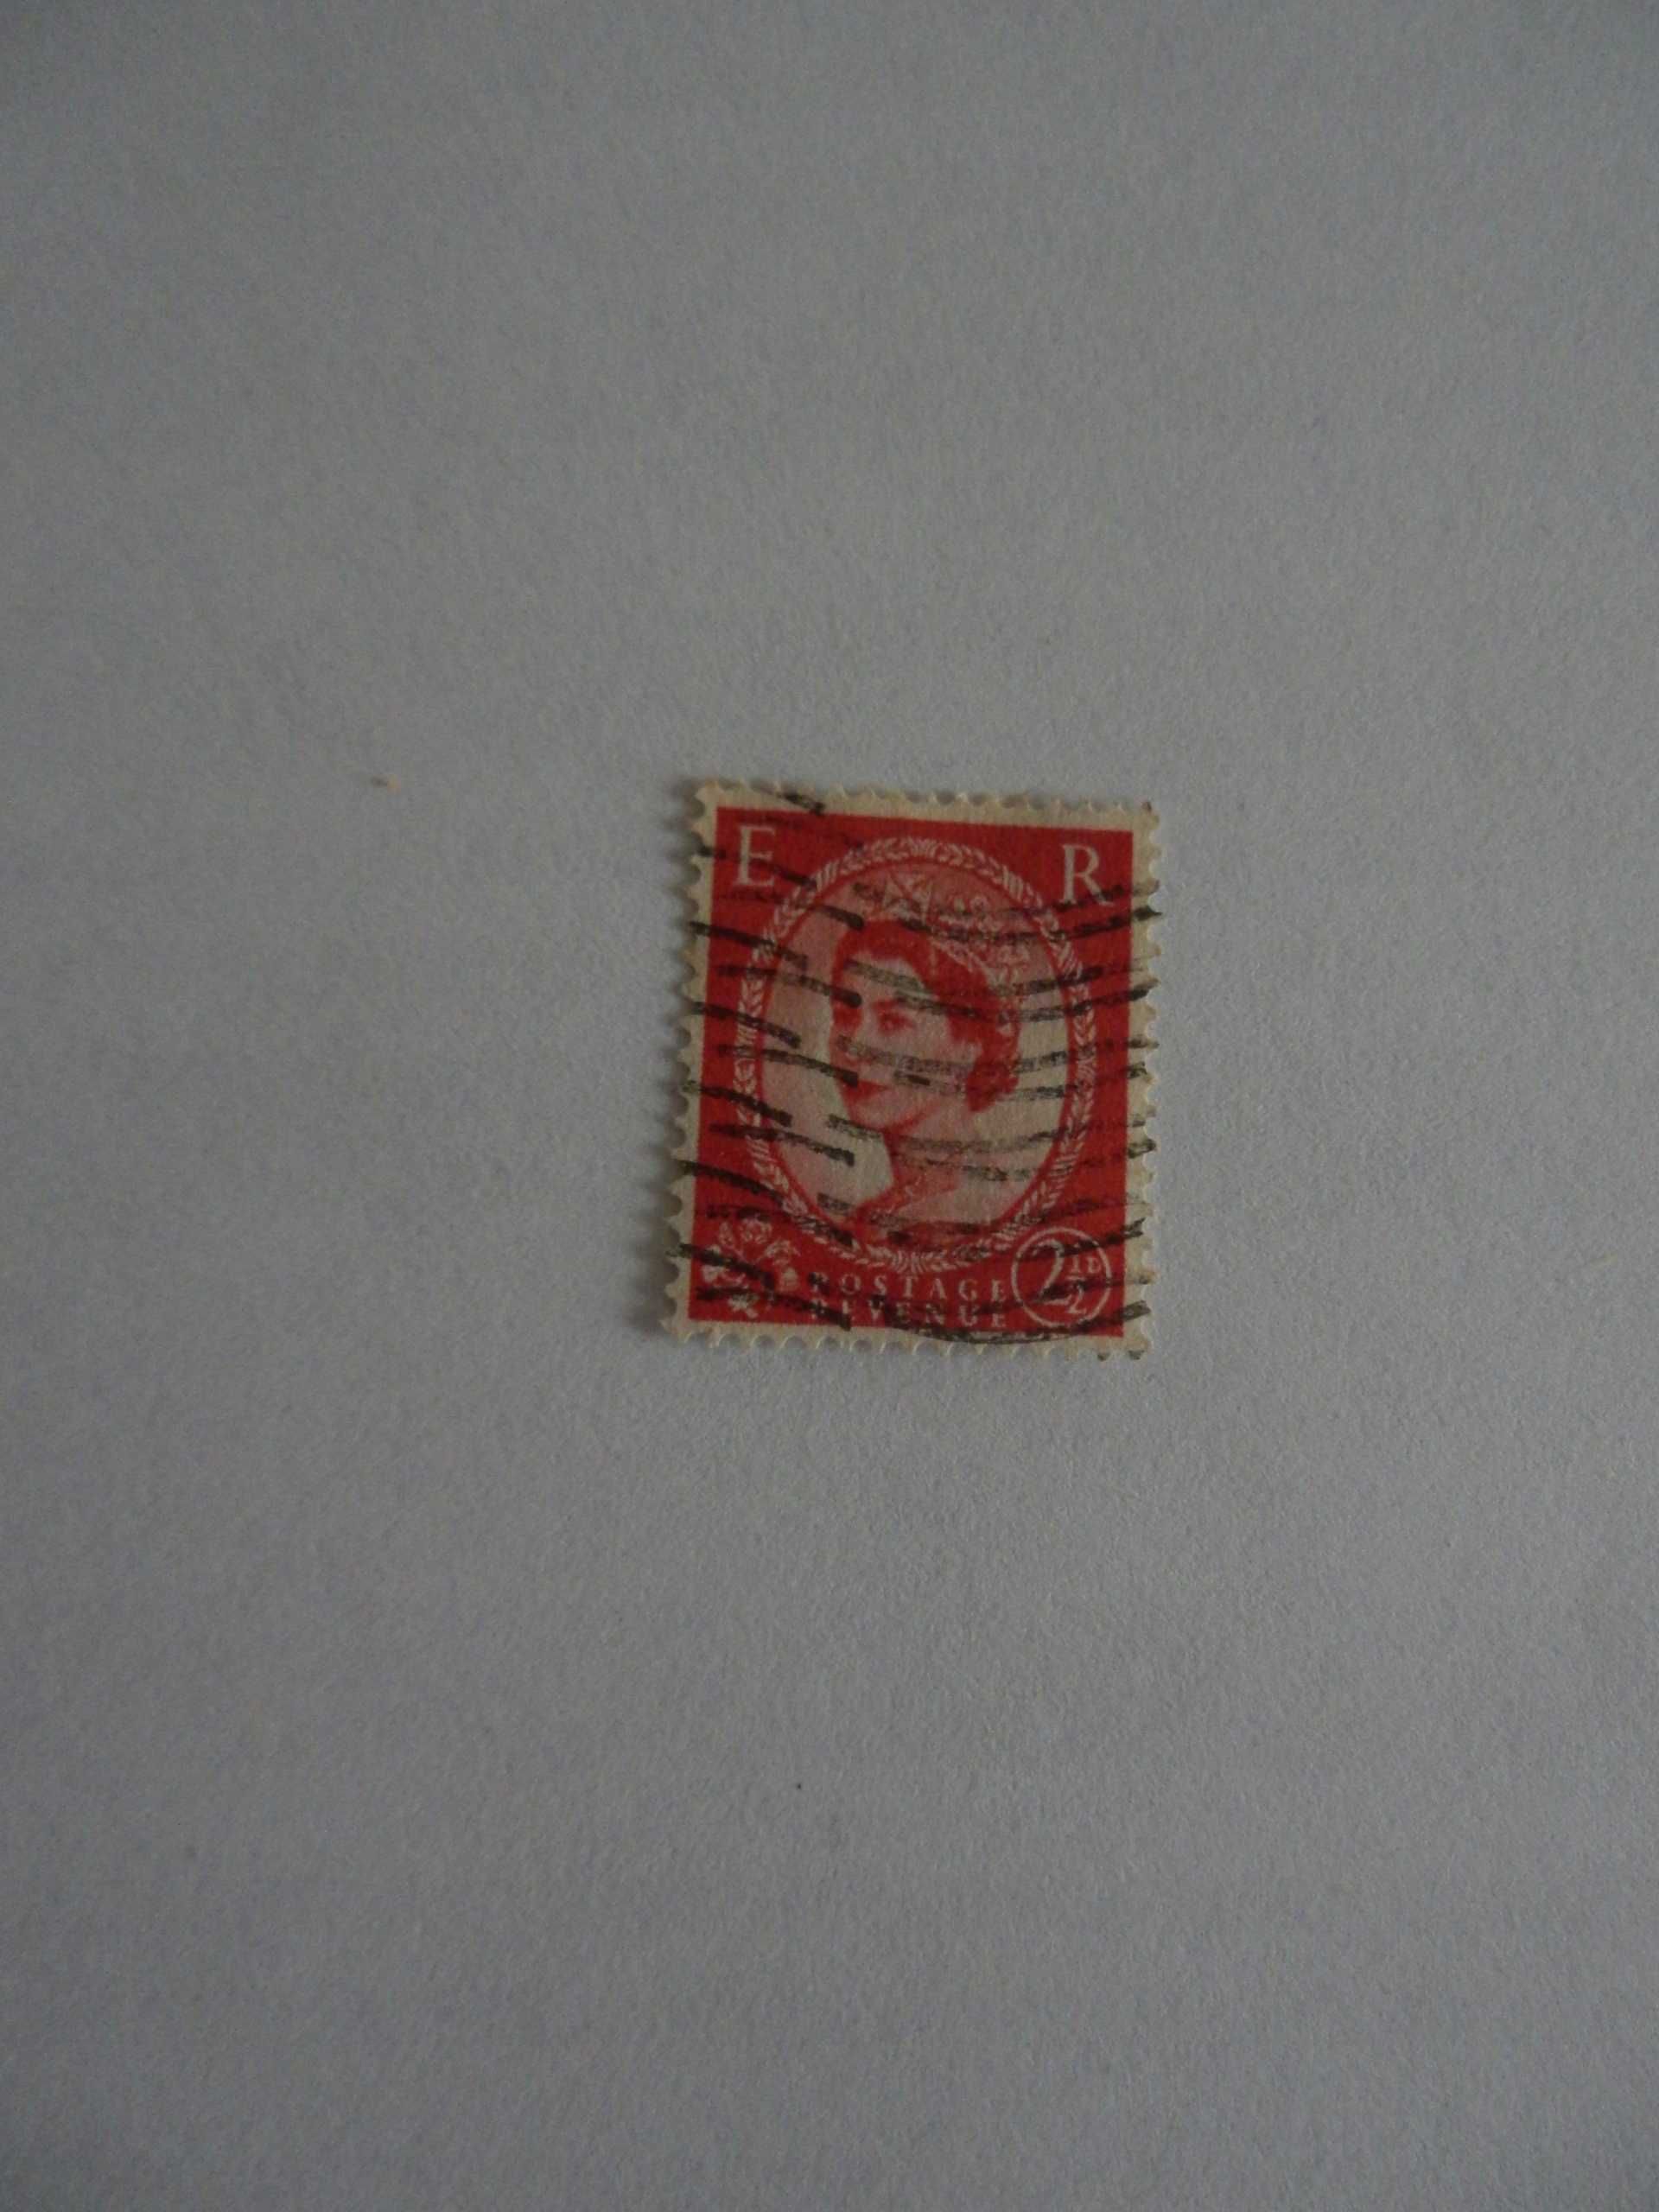 Znaczek pocztowyUK Królowa Elżbieta II - 1958 r.